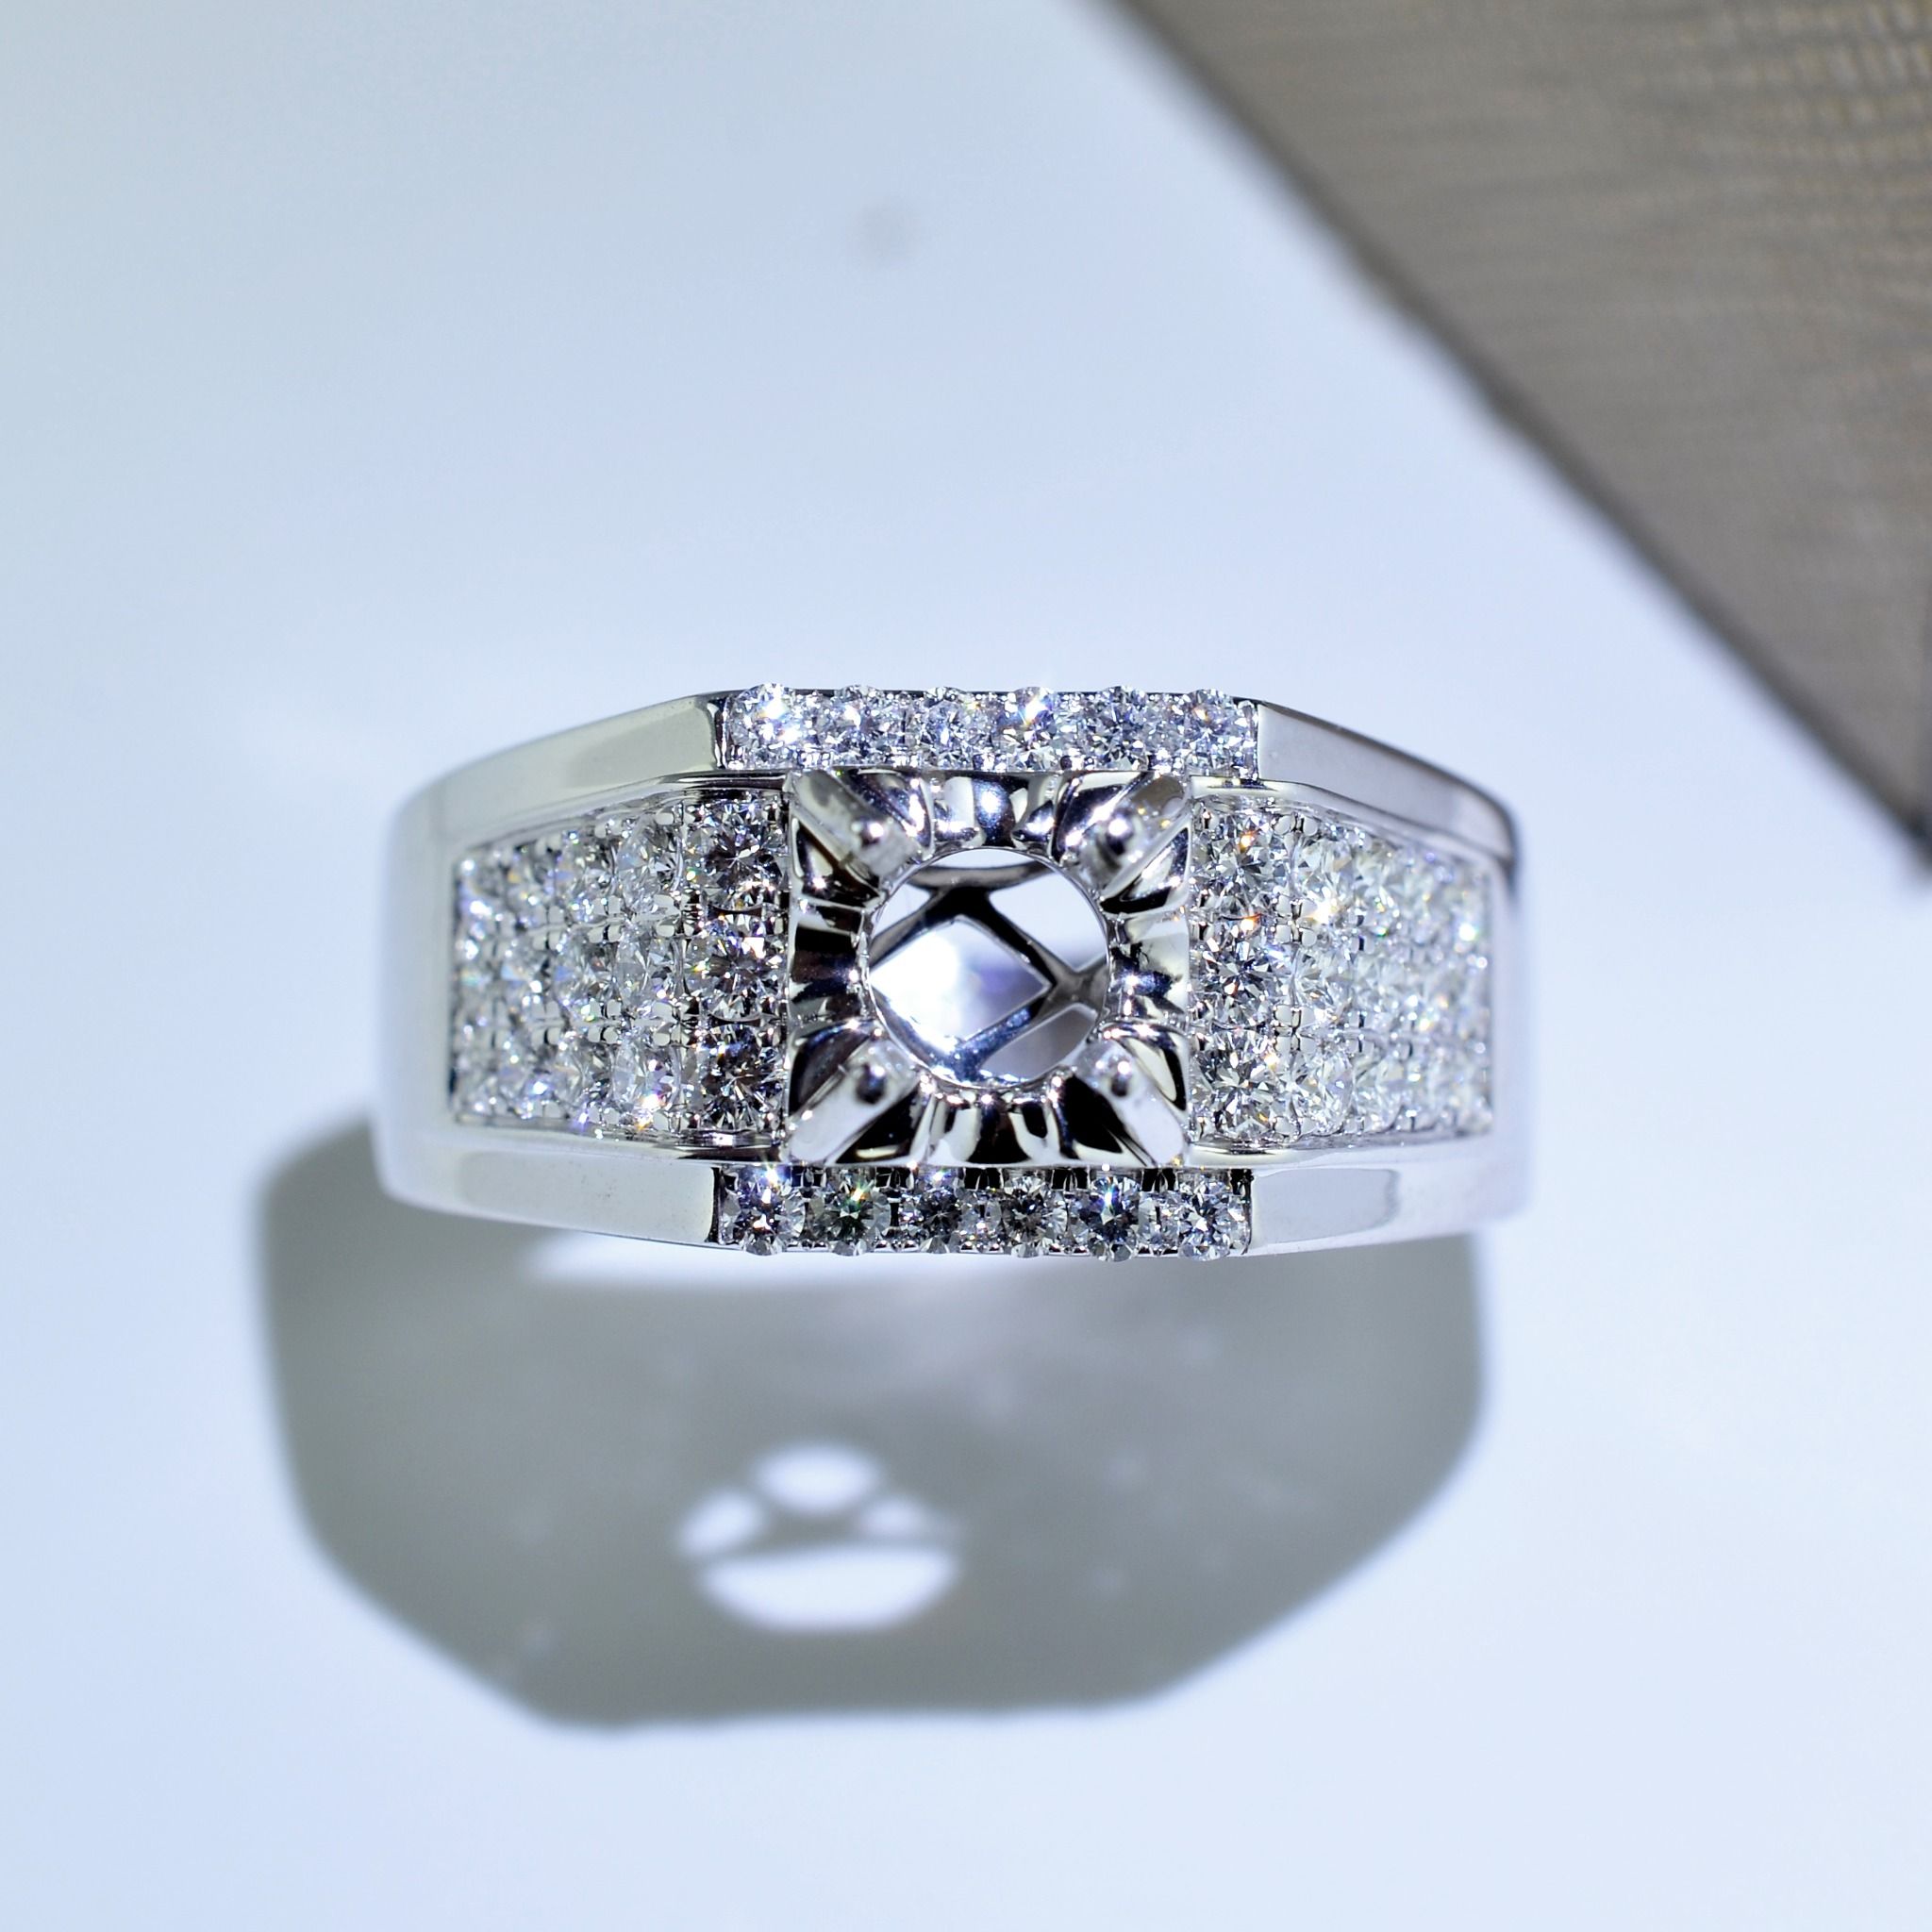  MALE DIAMOND RING 1815 6.0MM (NHẪN NAM KIM CƯƠNG 1815 Ổ CHỦ 6.0LI) 